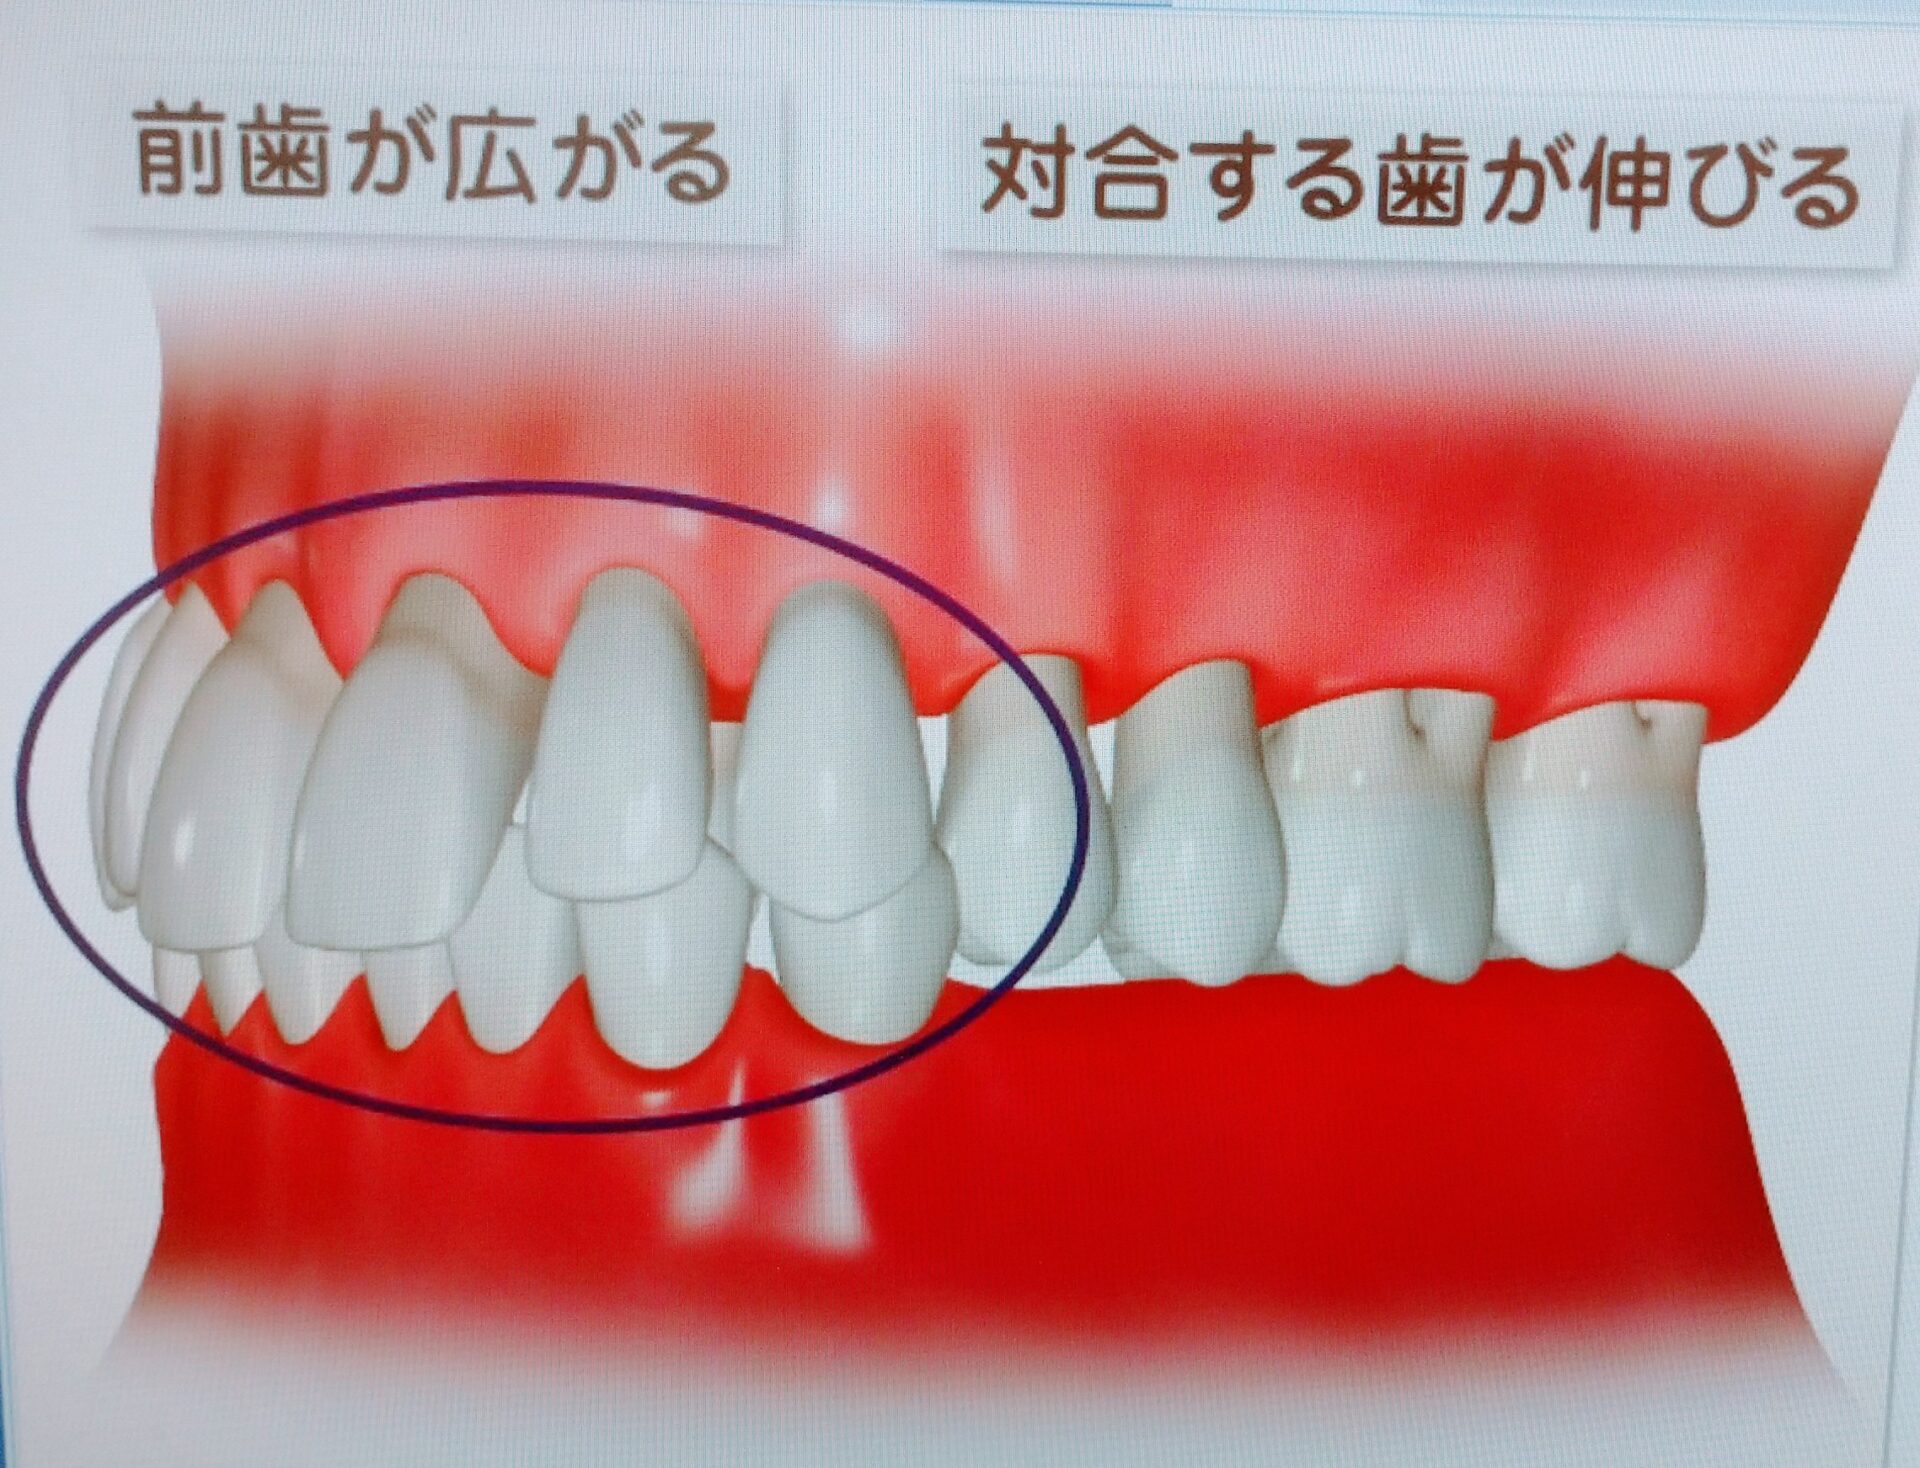 対合歯の挺出と前歯部のフレアアウトがおこっているイラスト